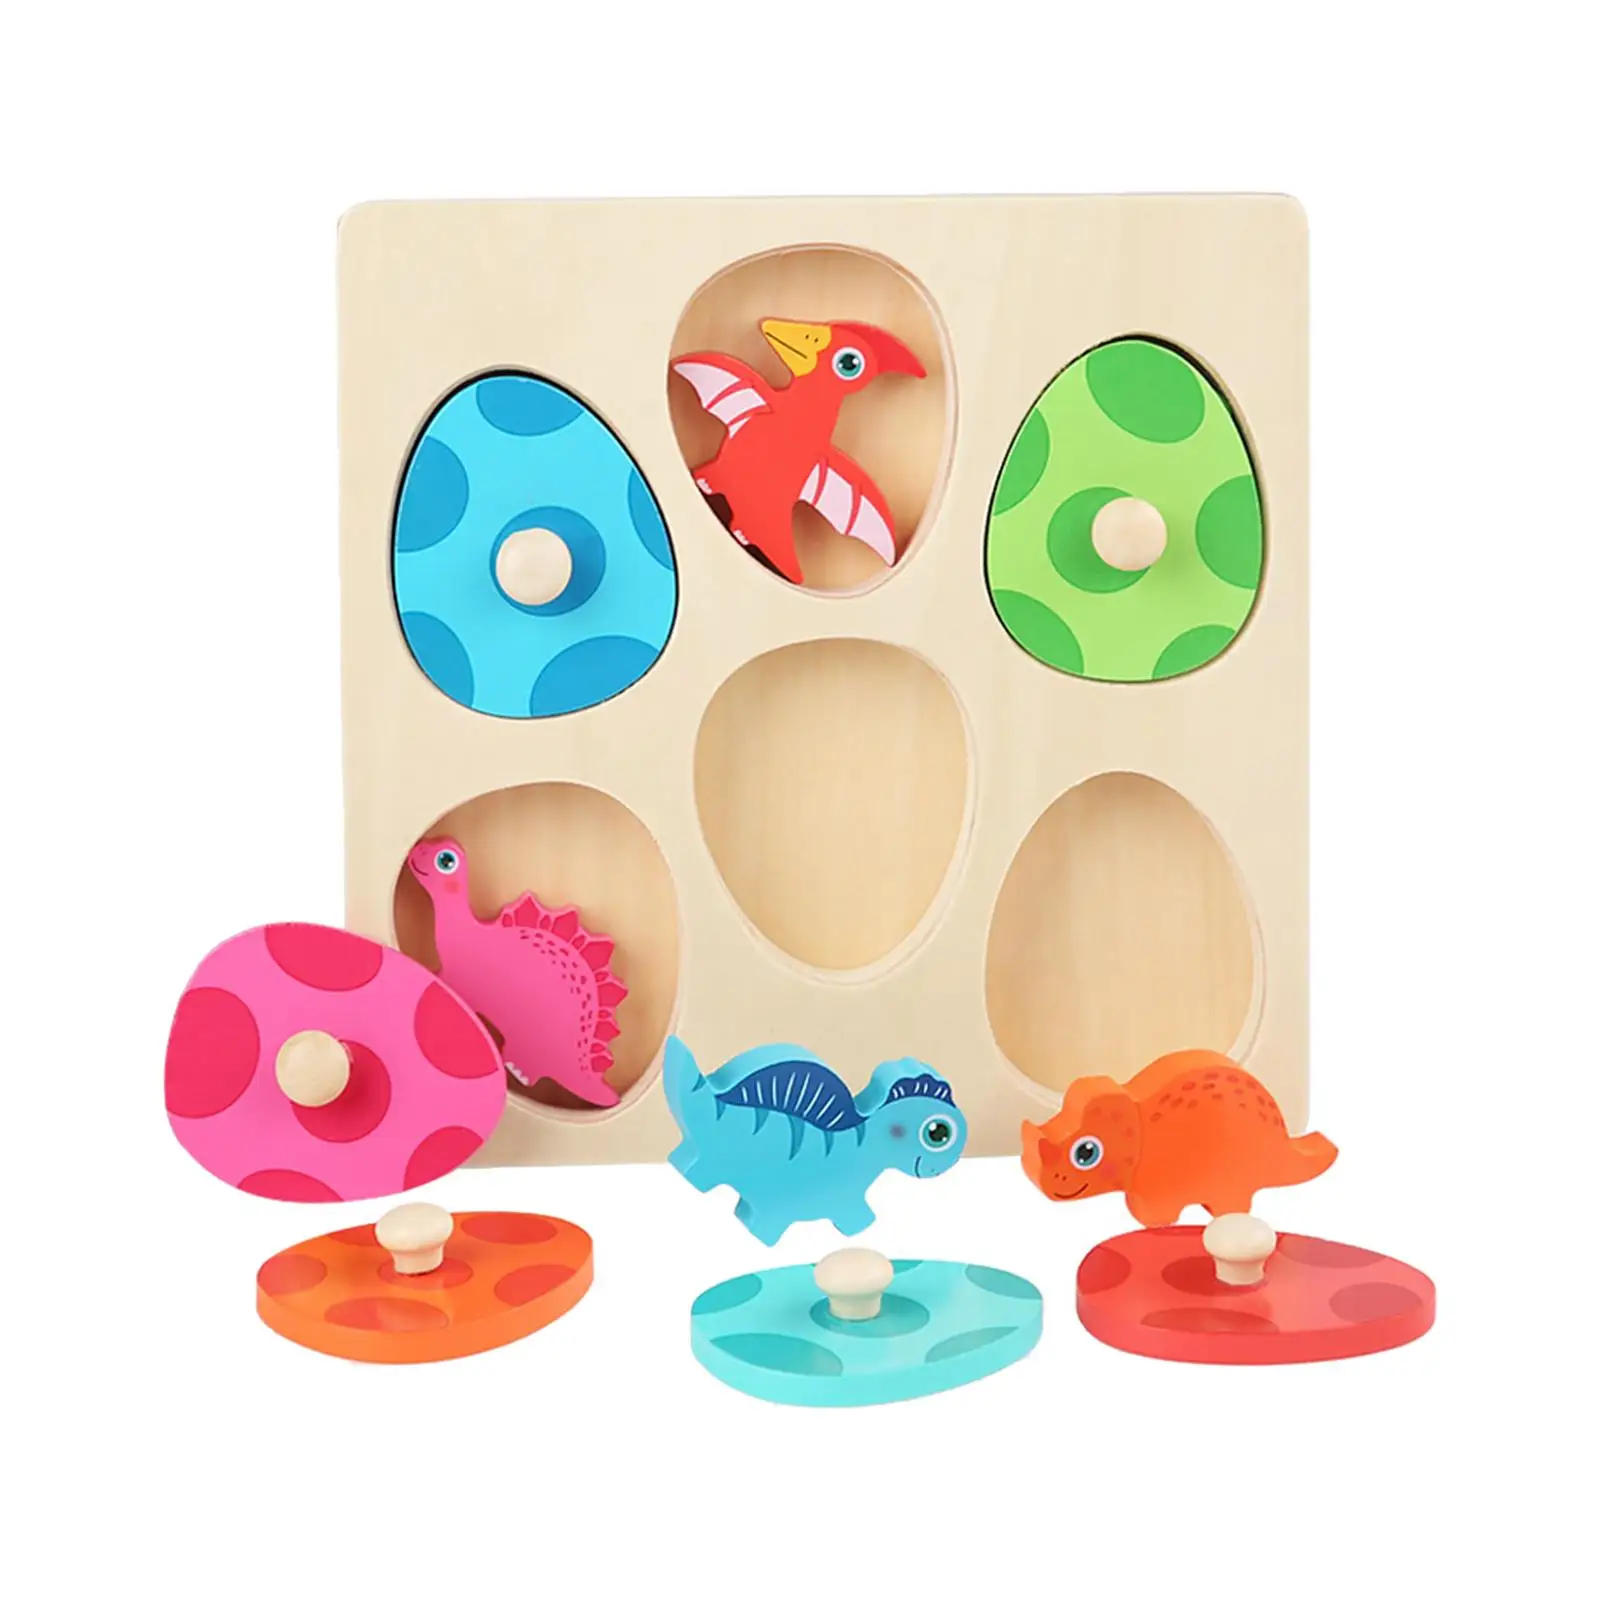 

Деревянные пазлы-Динозавры, развивающая игрушка, пазлы для раннего обучения для мальчиков и девочек, подарок для детей 1, 2, 3 лет